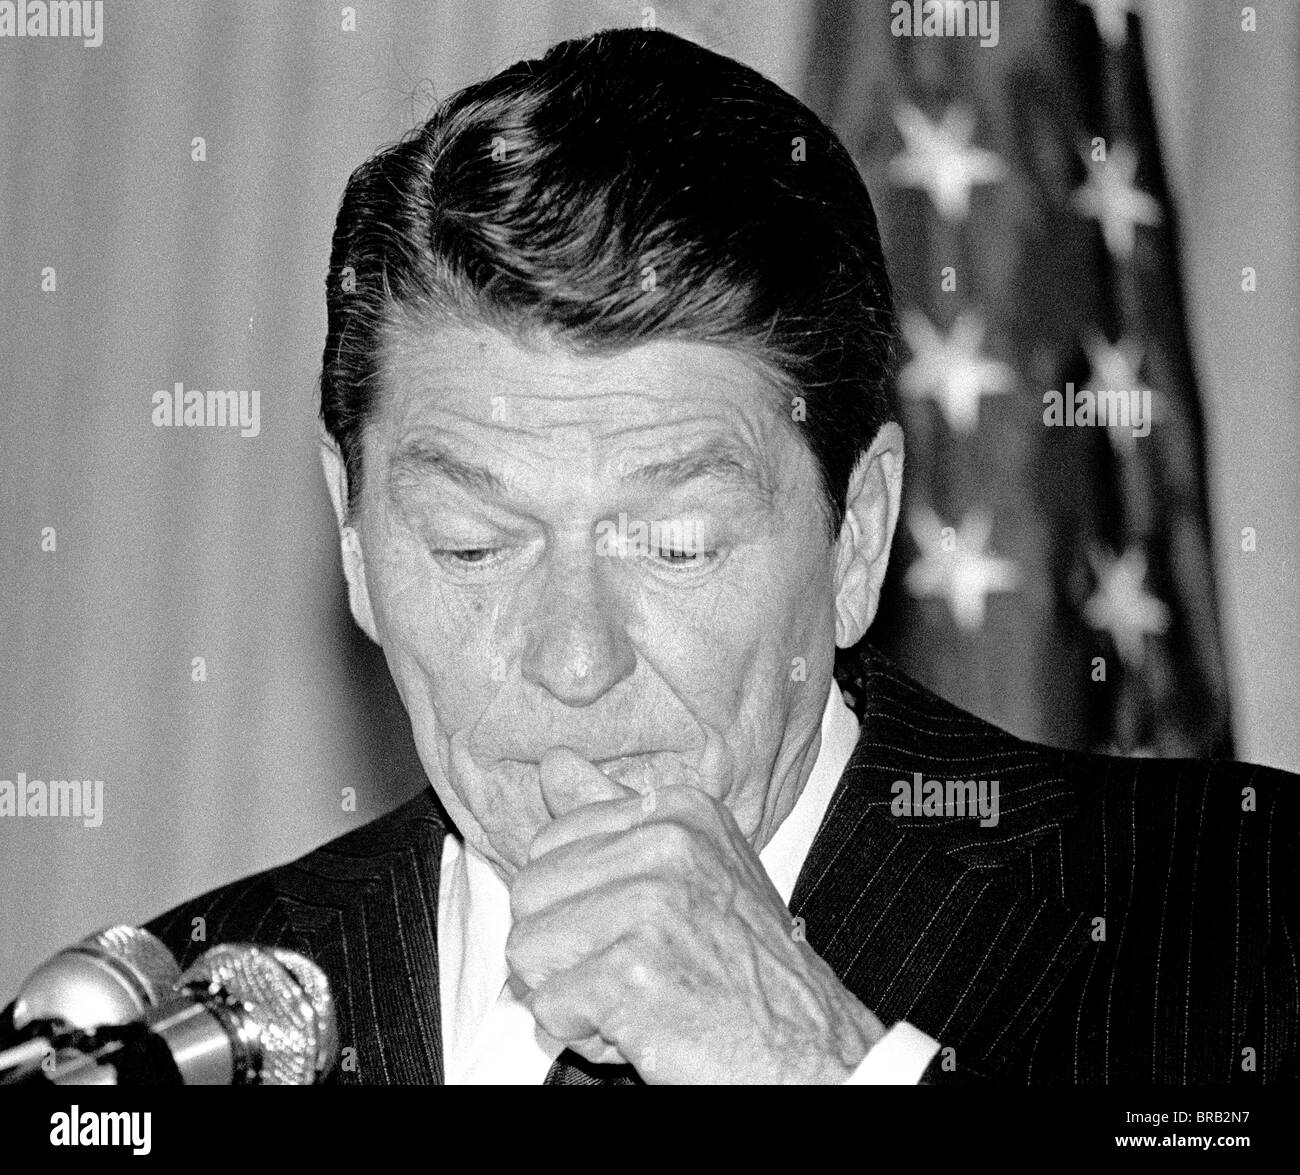 President Ronald Reagan at press conference in San Francisco, California, May 9, 1980. Stock Photo